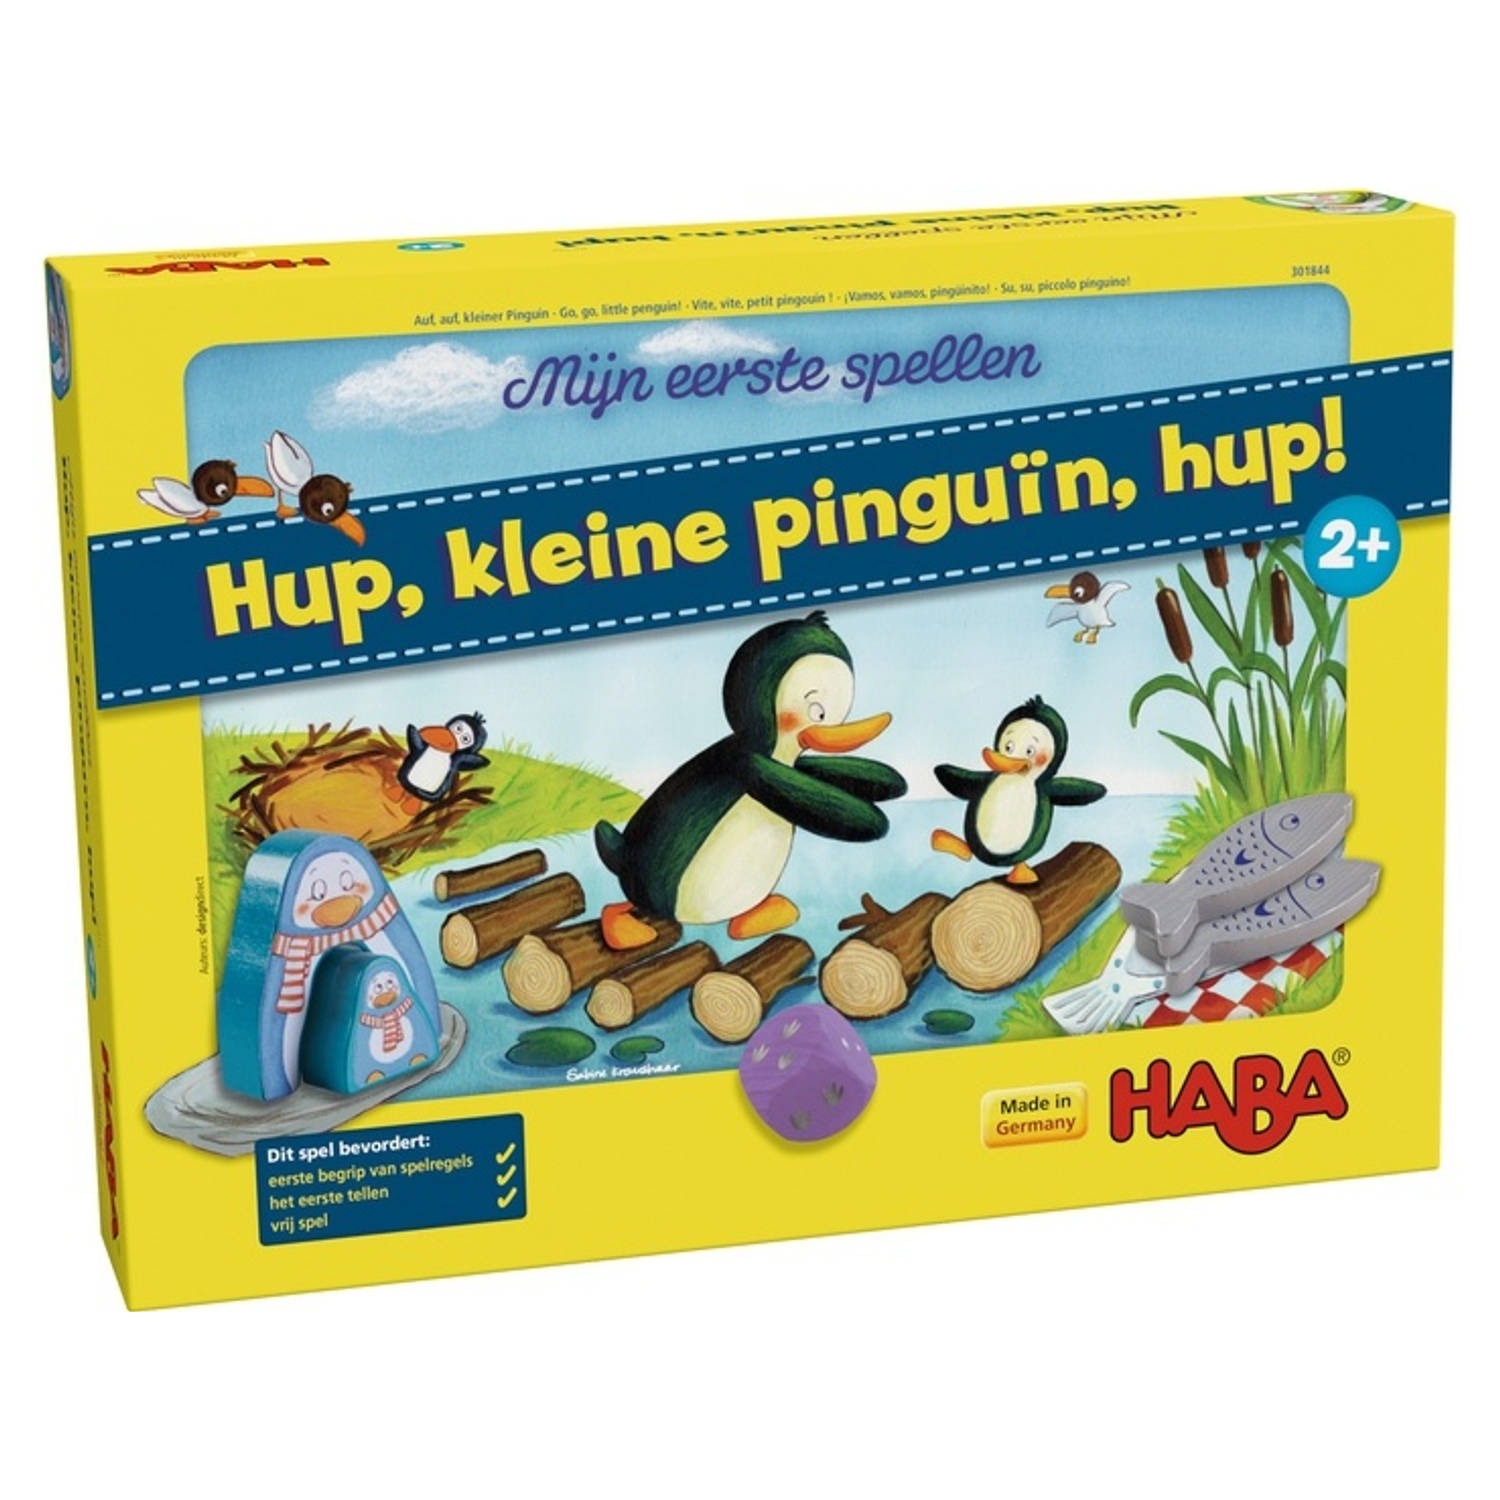 HABA kinderspel Hup, kleine pinguïn, hup! (NL)